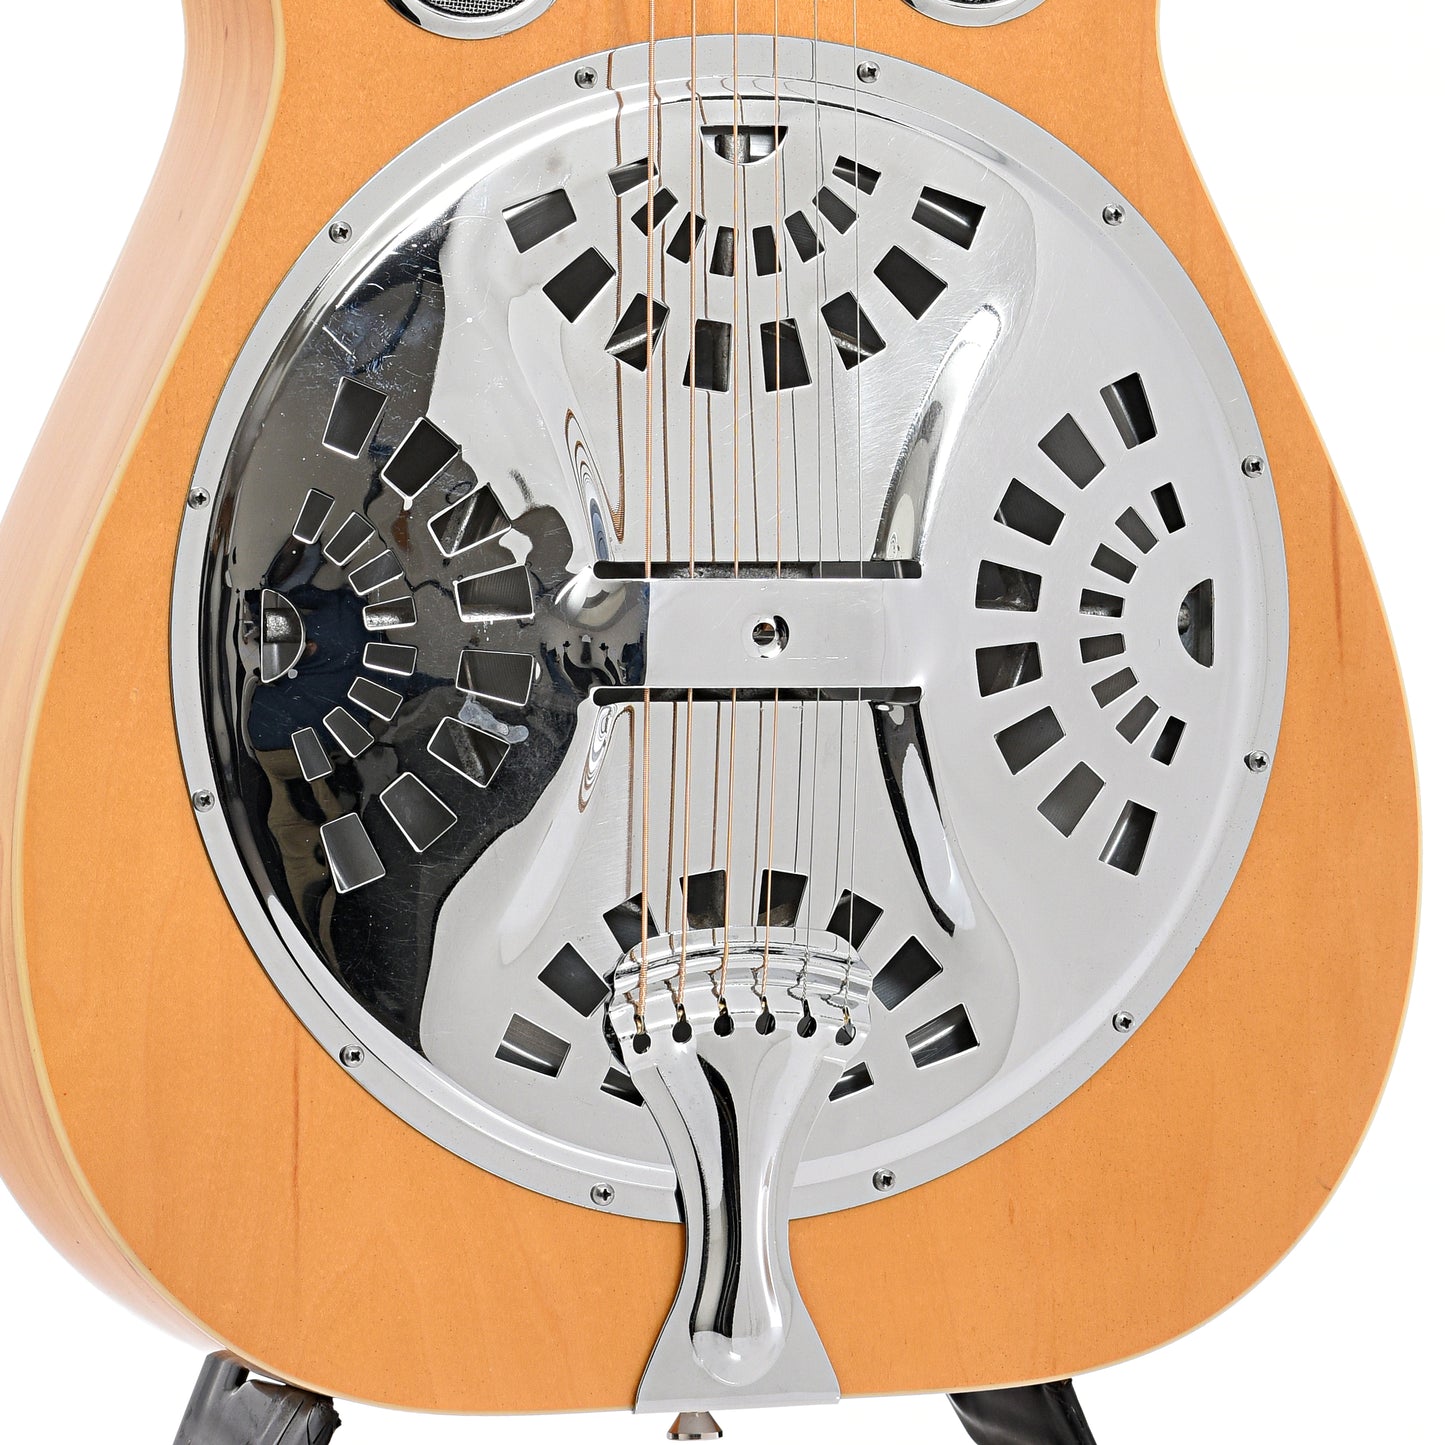 resonator area of Dobro 60DS Squareneck Resonator Guitar (1985)